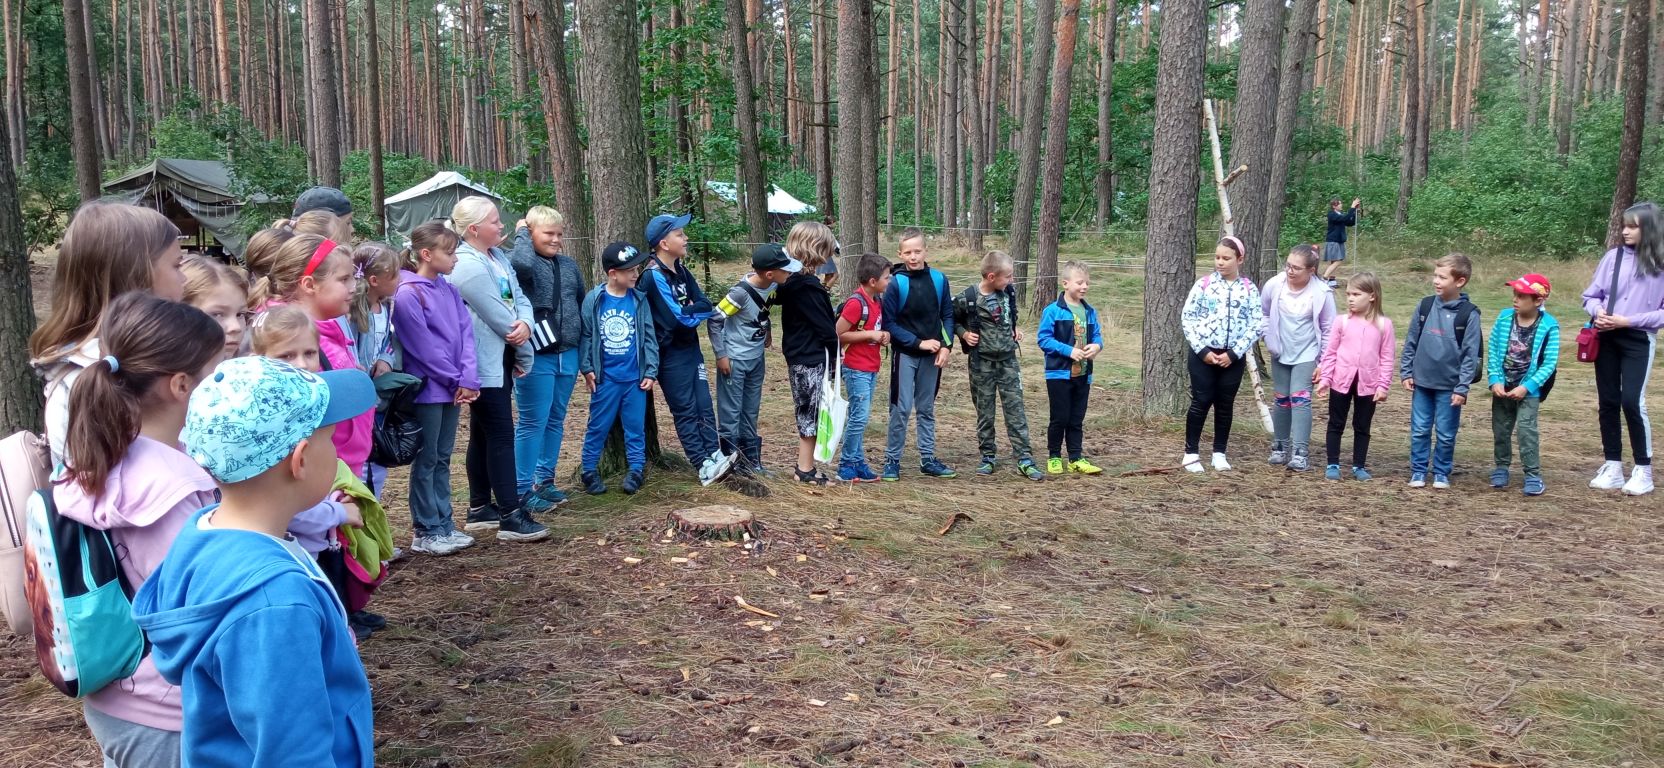 Fotografia przedstawia grupę uczestników zajęć wakacyjnych stojących w kręgu w lesie na zajęciach z harcerzami